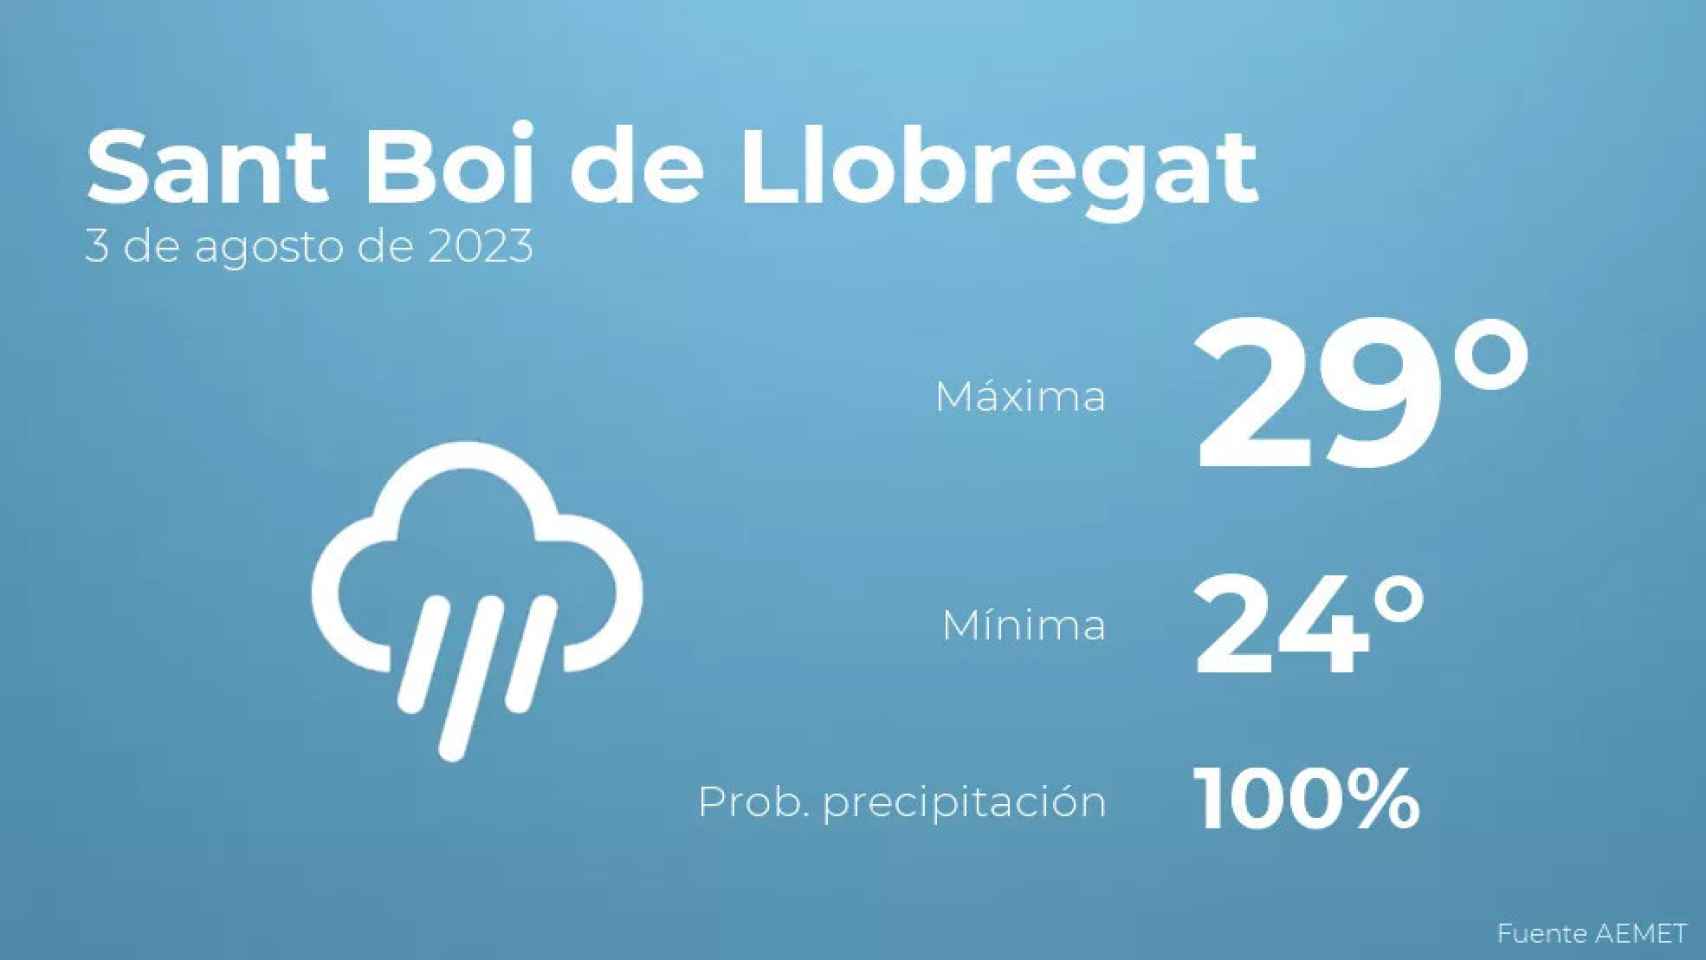 weather?weatherid=46&tempmax=29&tempmin=24&prep=100&city=Sant+Boi+de+Llobregat&date=3+de+agosto+de+2023&client=CRG&data provider=aemet